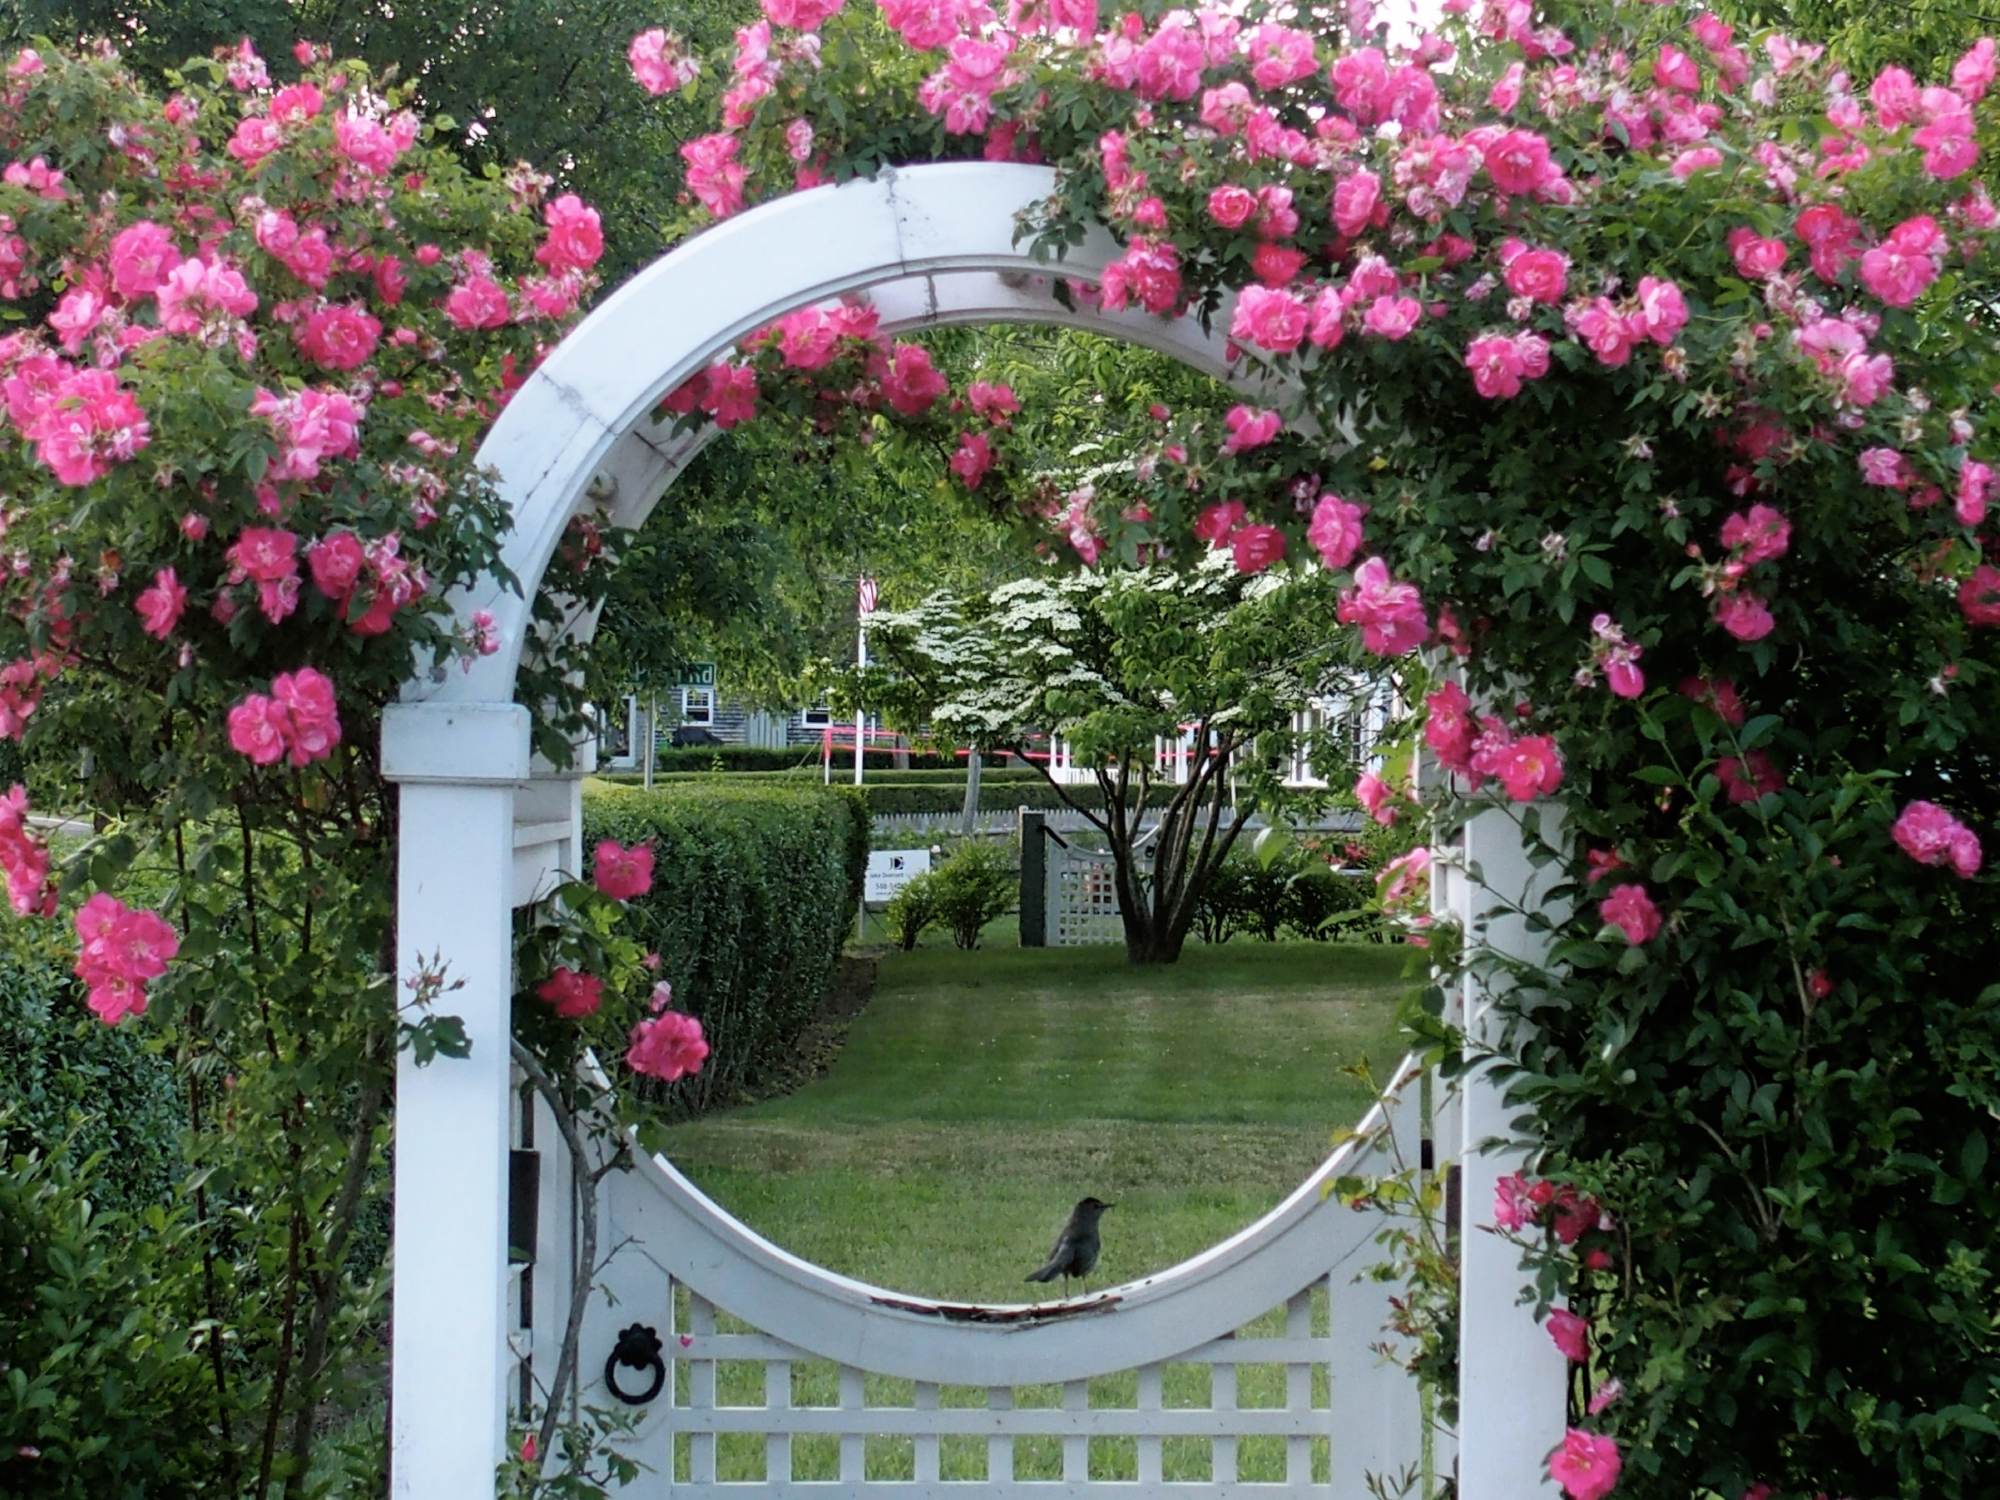 Thiết kế vườn rustic là xu hướng được nhiều người yêu thích hiện nay. Hãy cùng chiêm ngưỡng những khu vườn theo phong cách rustic mang đến không khí trong lành, thư giãn và yên bình, đem lại sự thư thái cho người thưởng ngoạn.